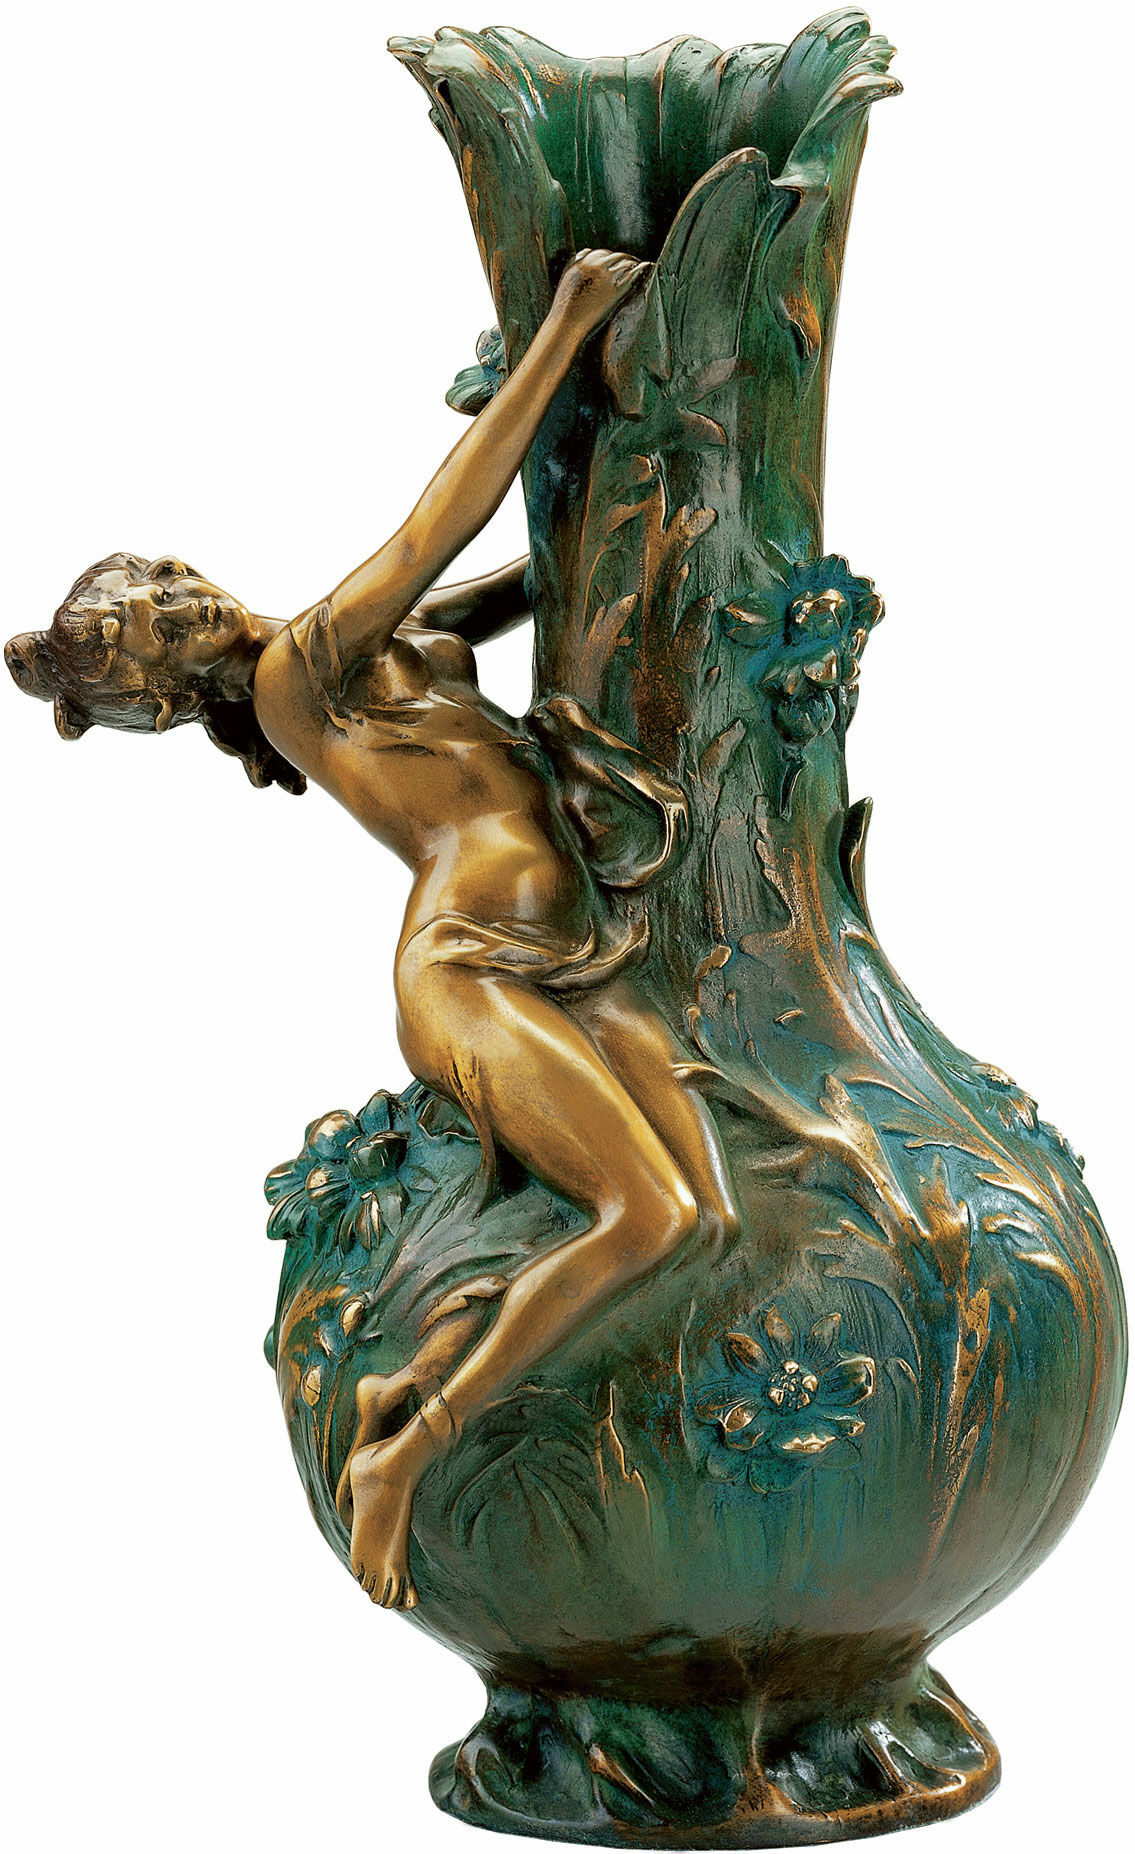 Vase "Marguerites", bundet bronzeversion von Louis Auguste Moreau